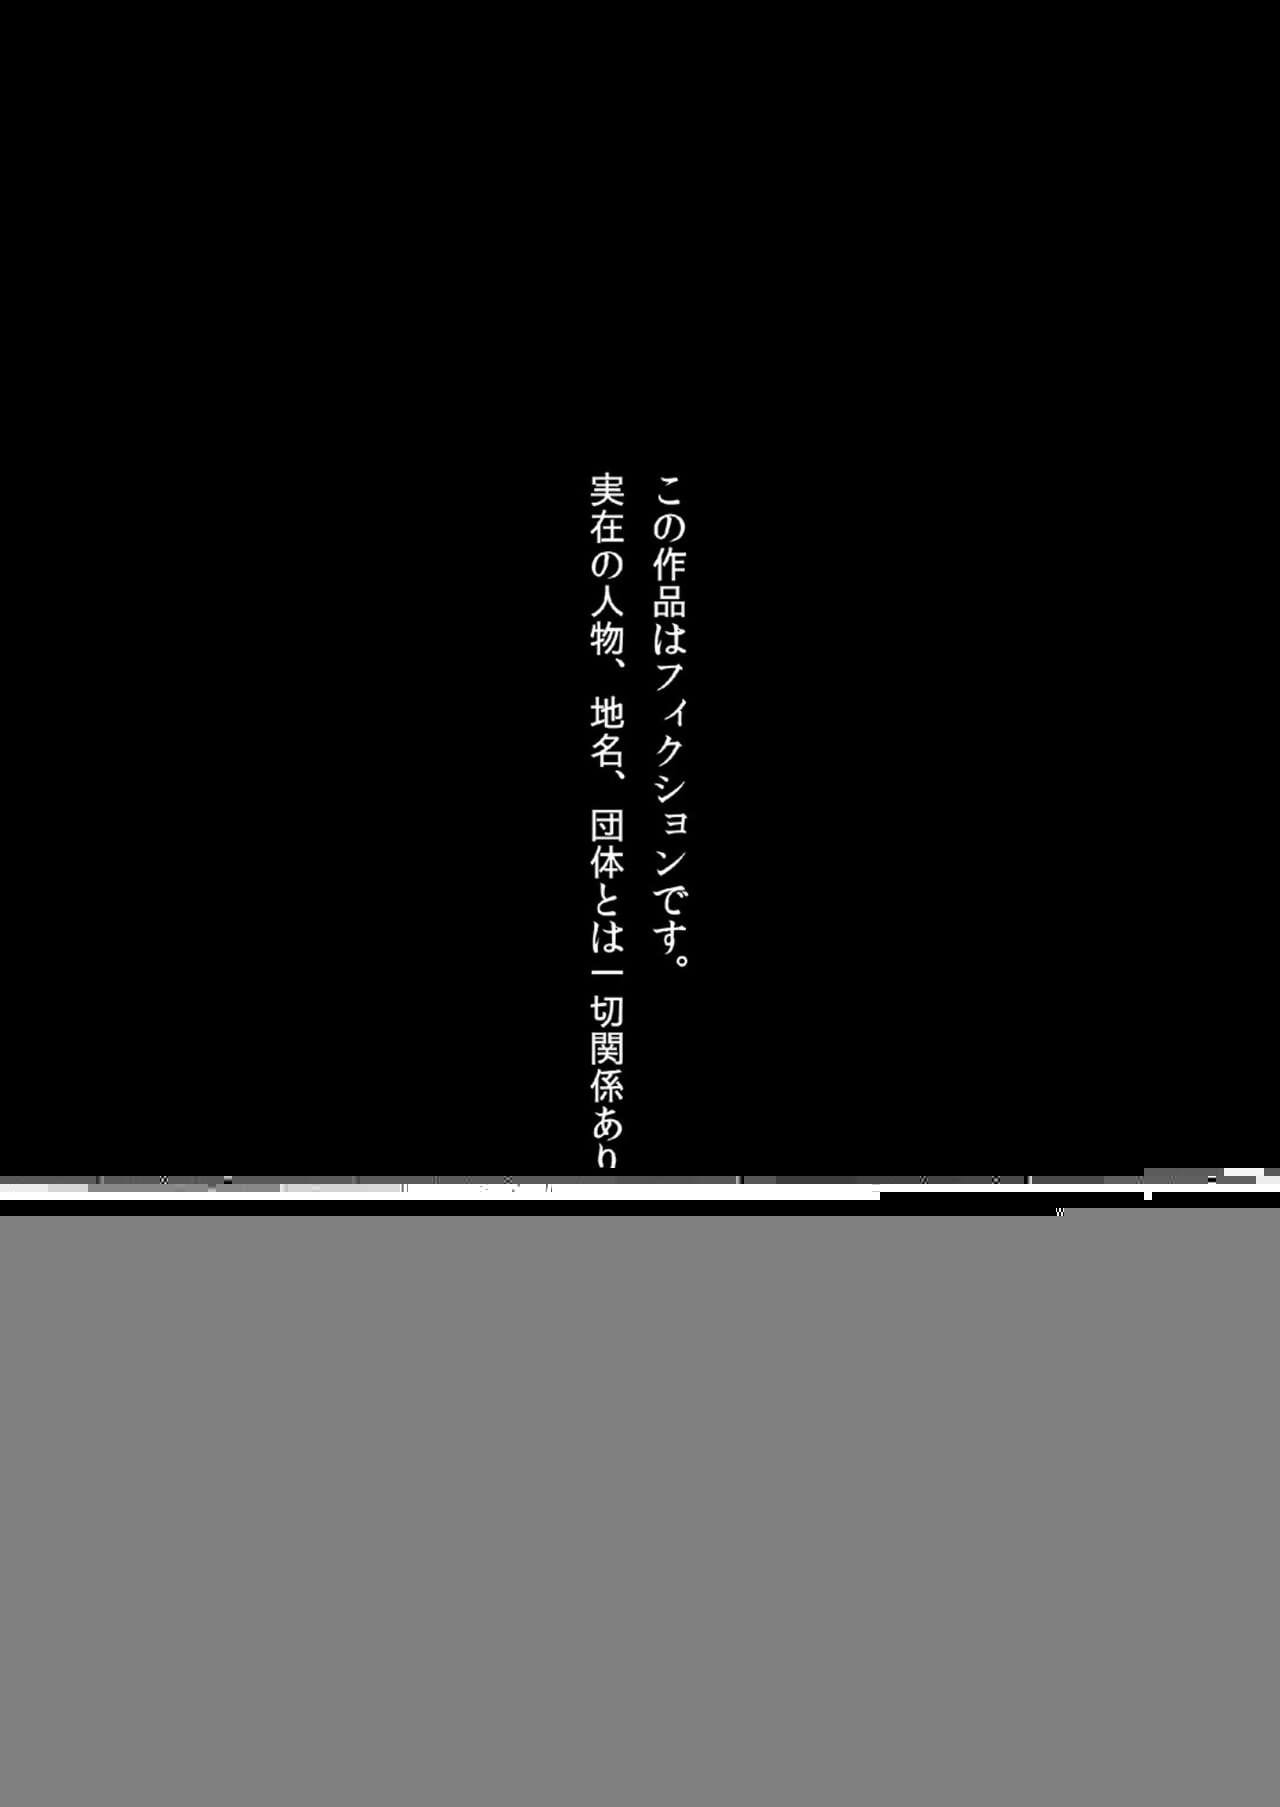 comic1☆13 nikumaki 베 nikujuuhachi inu tsuwara 니시키 emaki・kujira no inanaki joukan 디지털